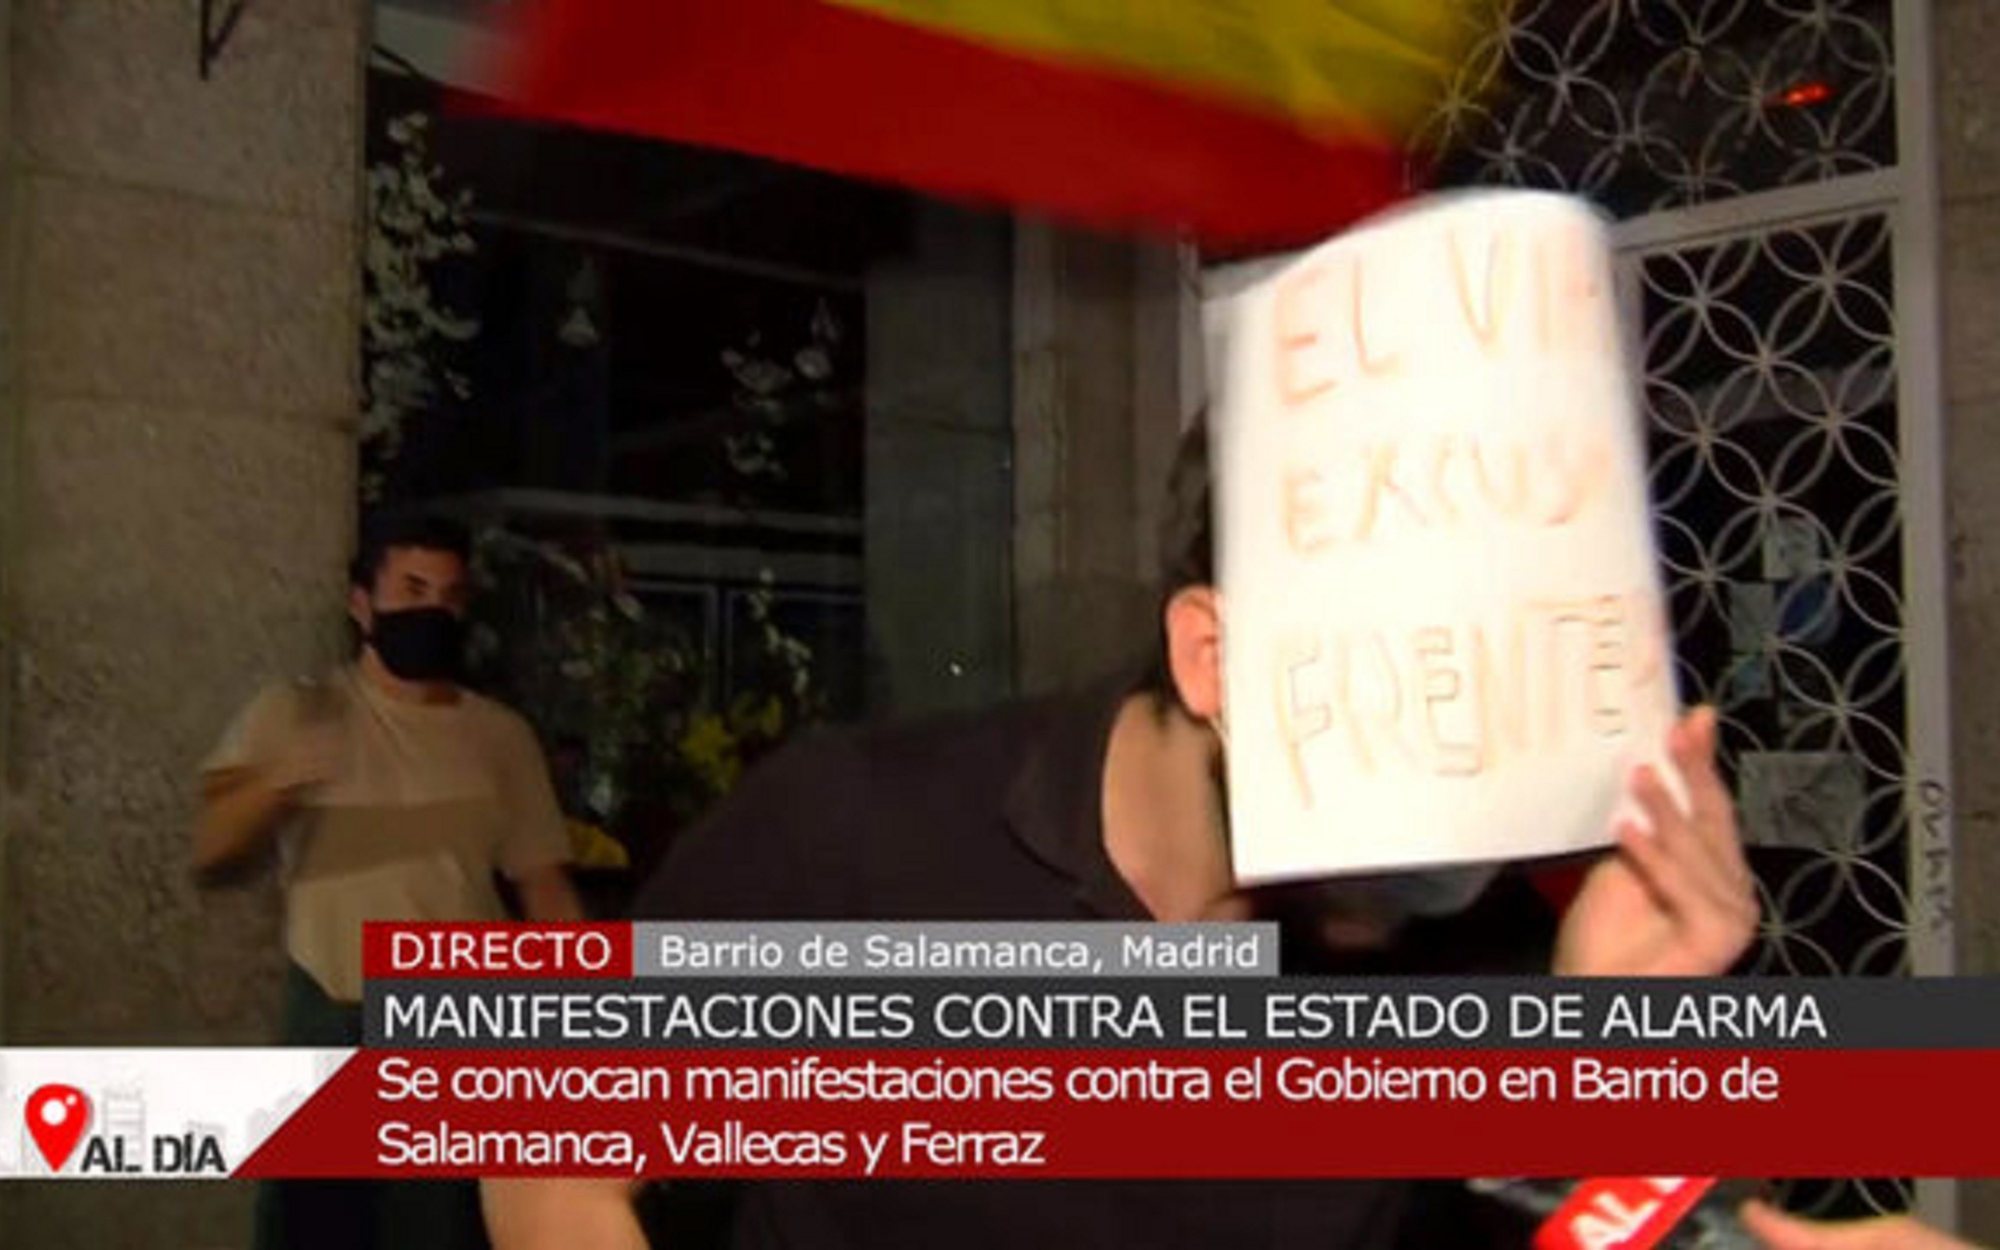 El grito de un manifestante en el barrio de Salamanca a las cámaras 'Cuatro al día': "¡Viva Hitler!"